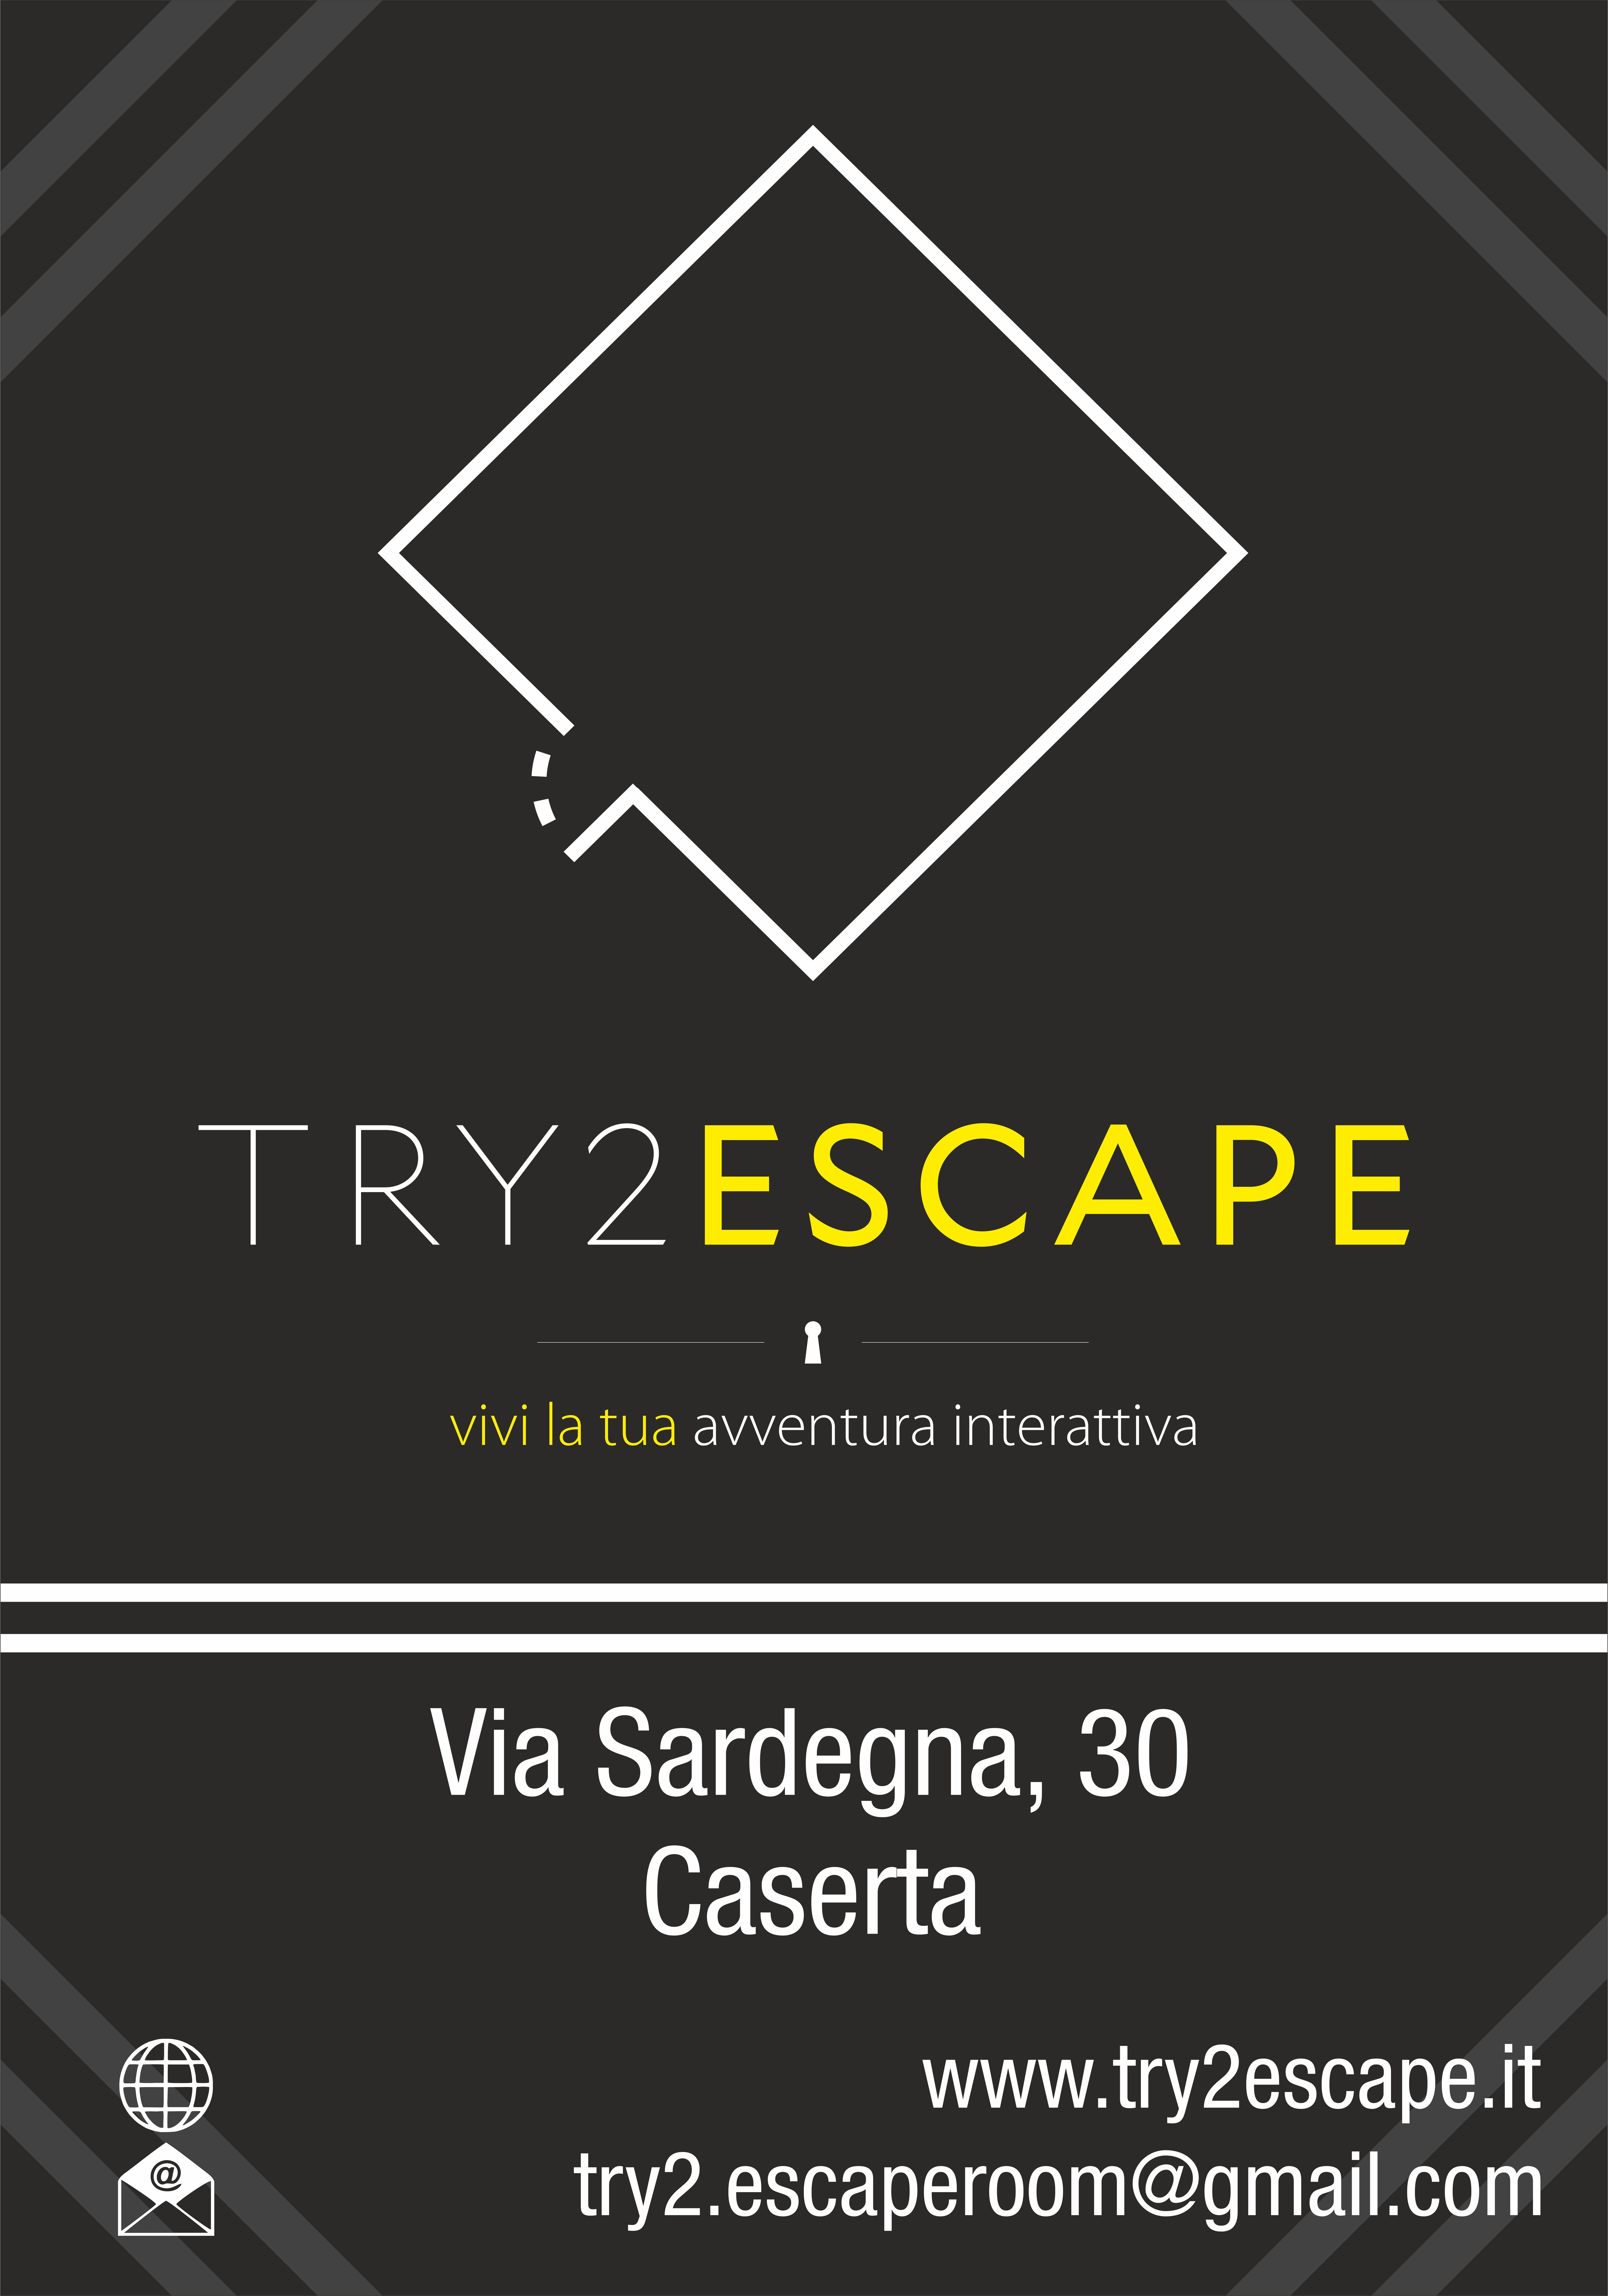 Try2Escape Escape Room Caserta